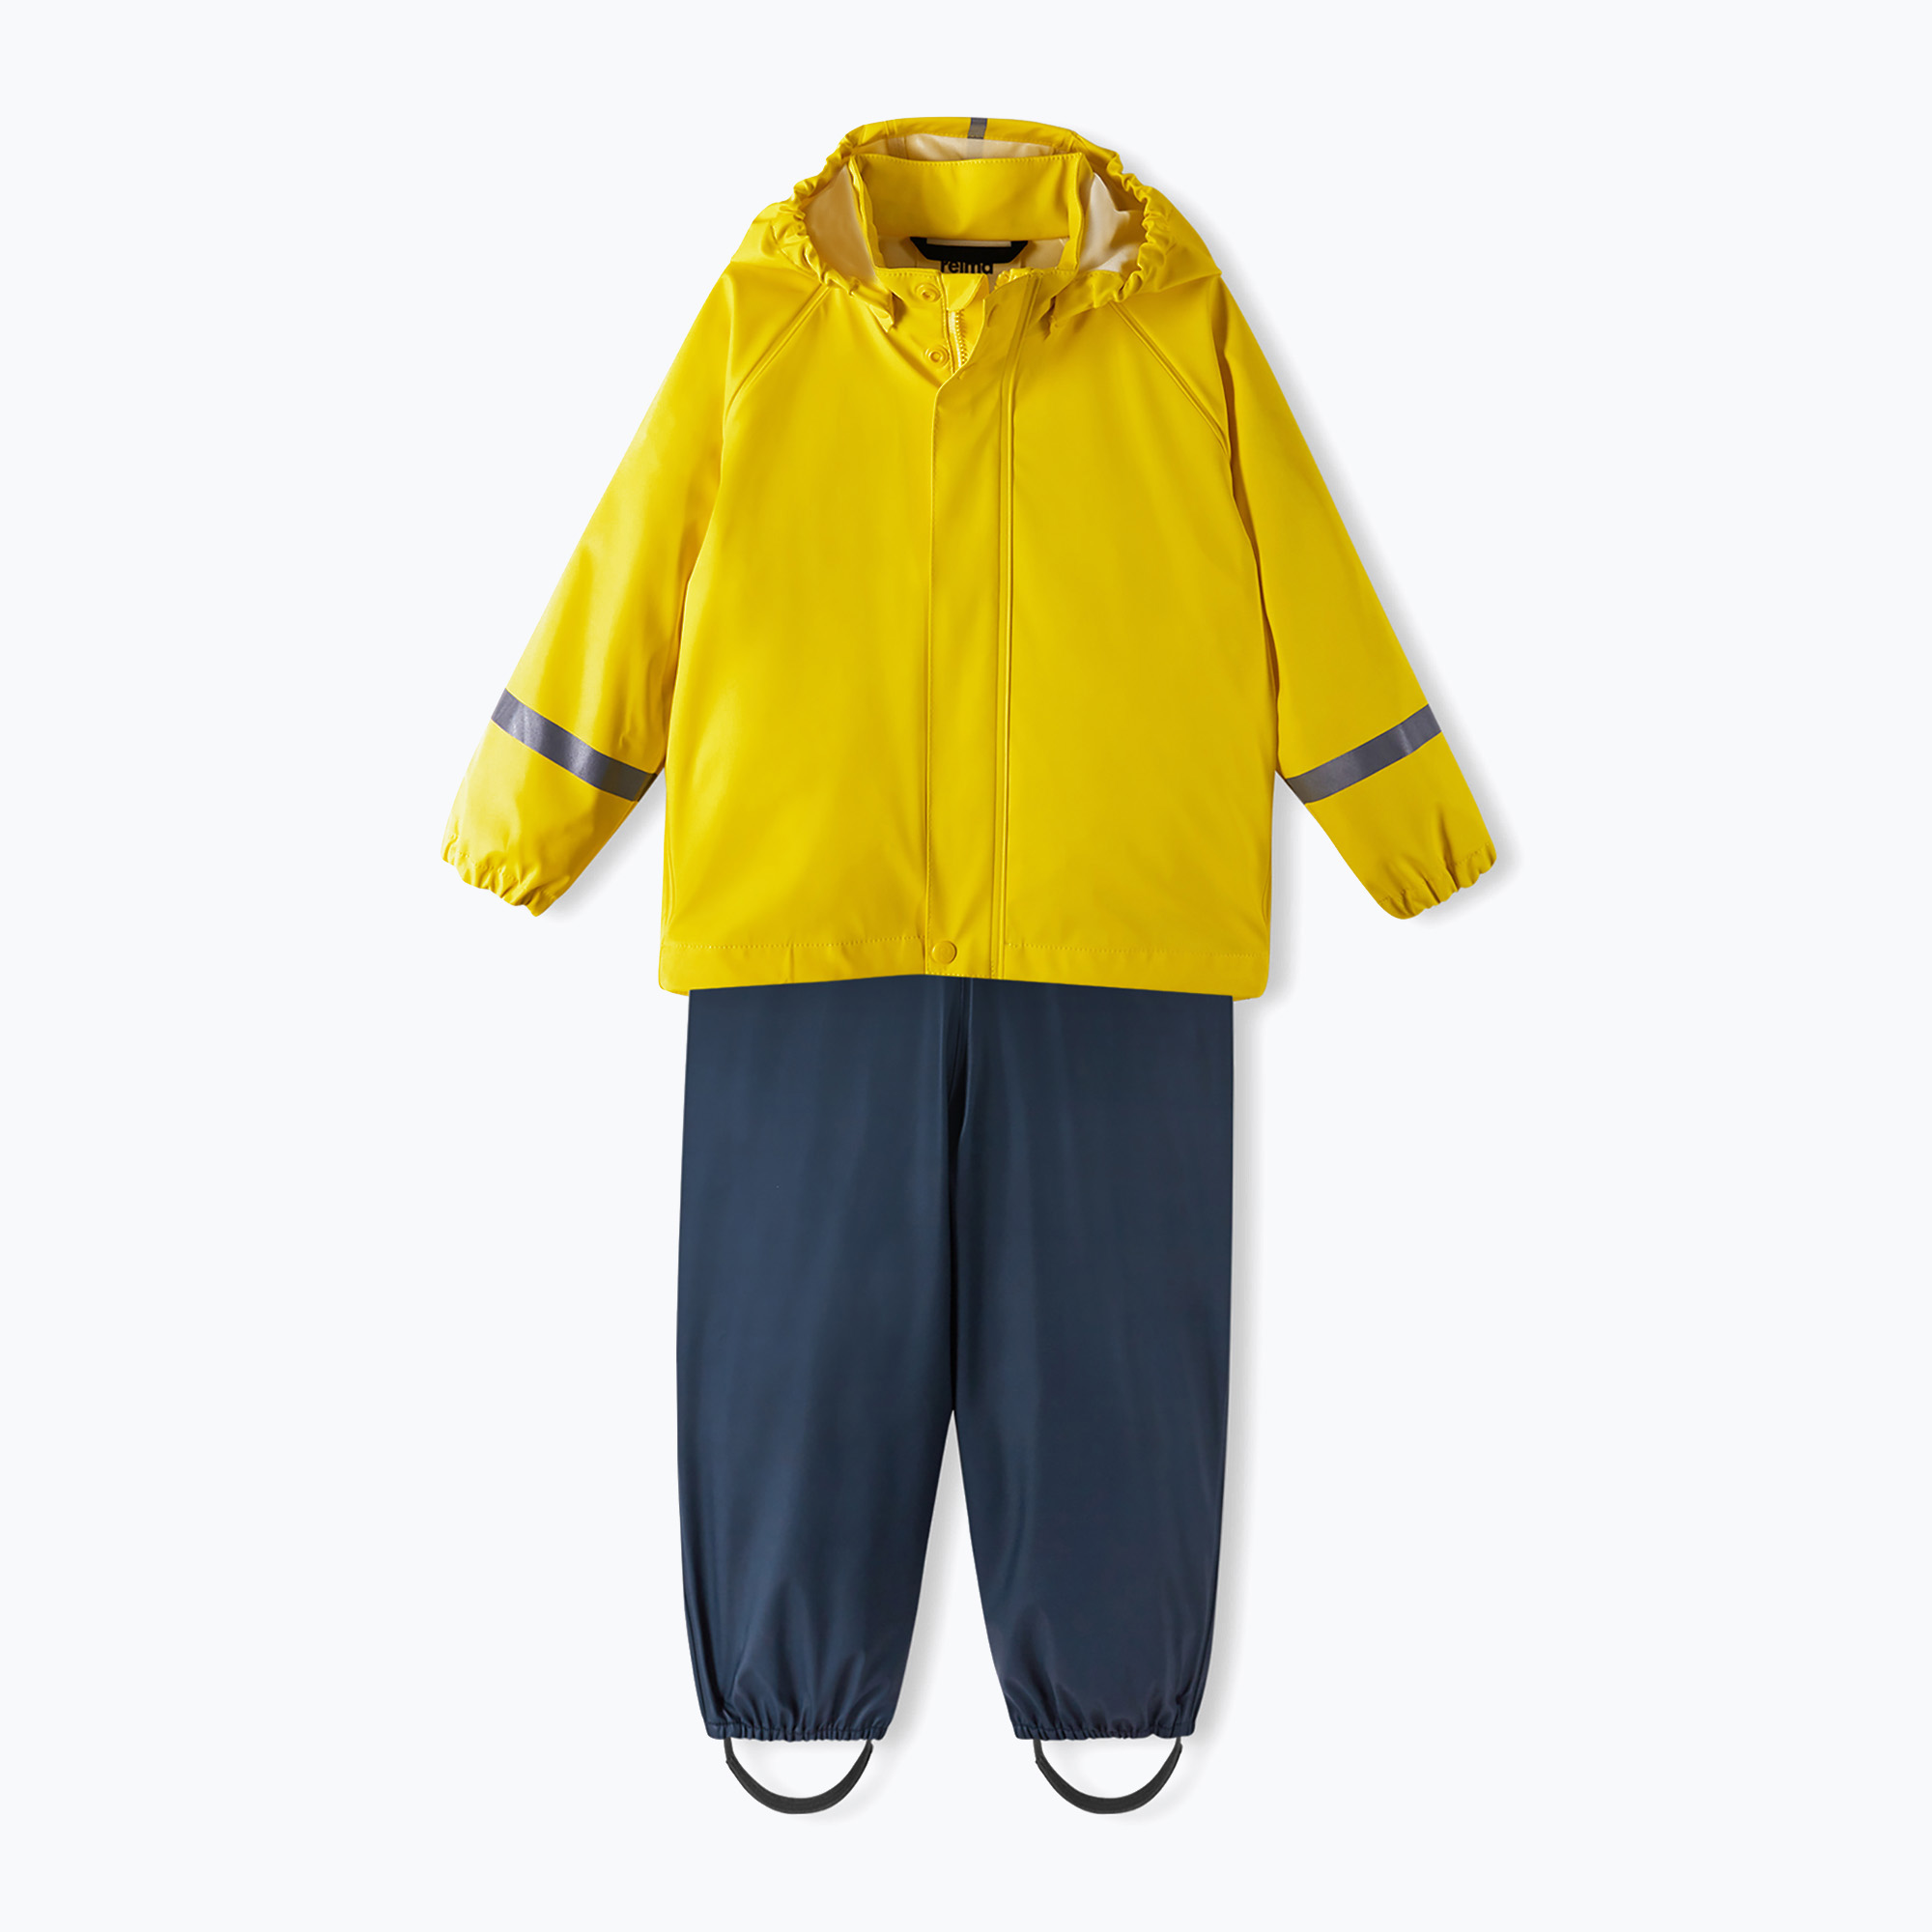 Детски комплект за дъжд Reima Tihku яке панталон жълто-тъмно 5100021A-235A